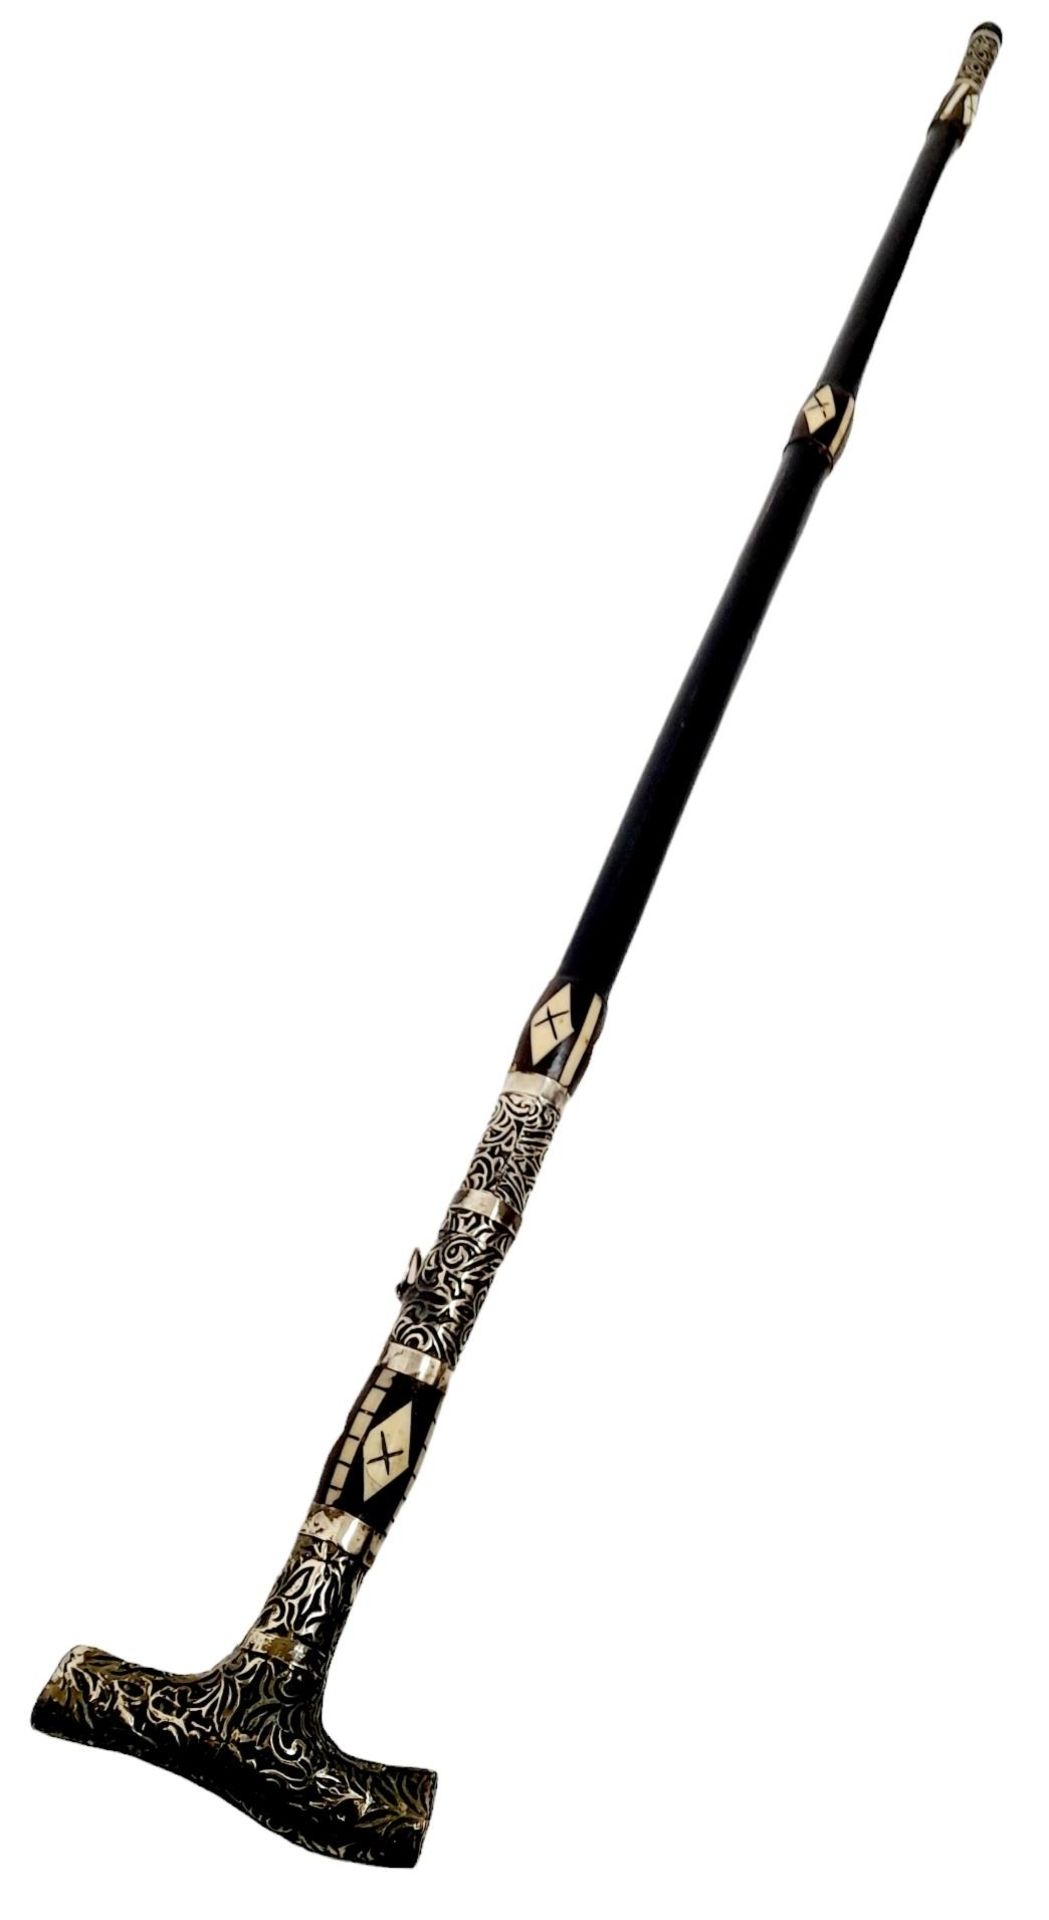 A Very Rare, Unique & Ornate Antique Bone Inlaid Wood and White Metal Sword Stick. 91cm Length.